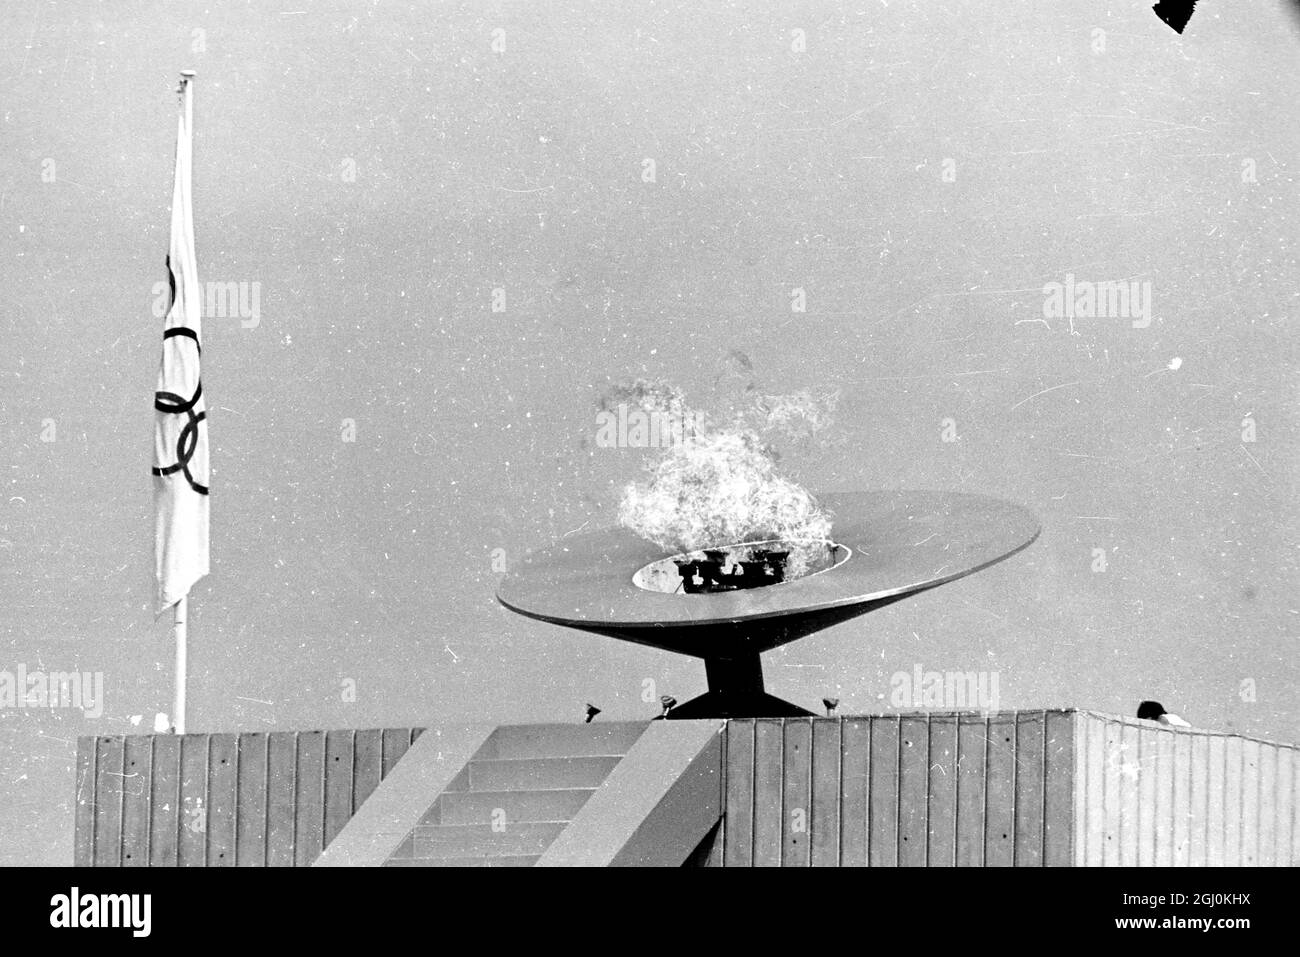 Città del Messico: Sopra lo Stadio Olimpico la fiamma Olimpica brucia brillantemente alla cerimonia di apertura dei Giochi Olimpici del 1968. La fiamma fu accesa da Enriqueta Basilio de Sotelo, l'uragano messicano. È la prima donna nella storia delle Olimpiadi moderne ad avere l'onore. La cerimonia ha segnalato l'inizio dei giochi il 12 ottobre 1968 Foto Stock